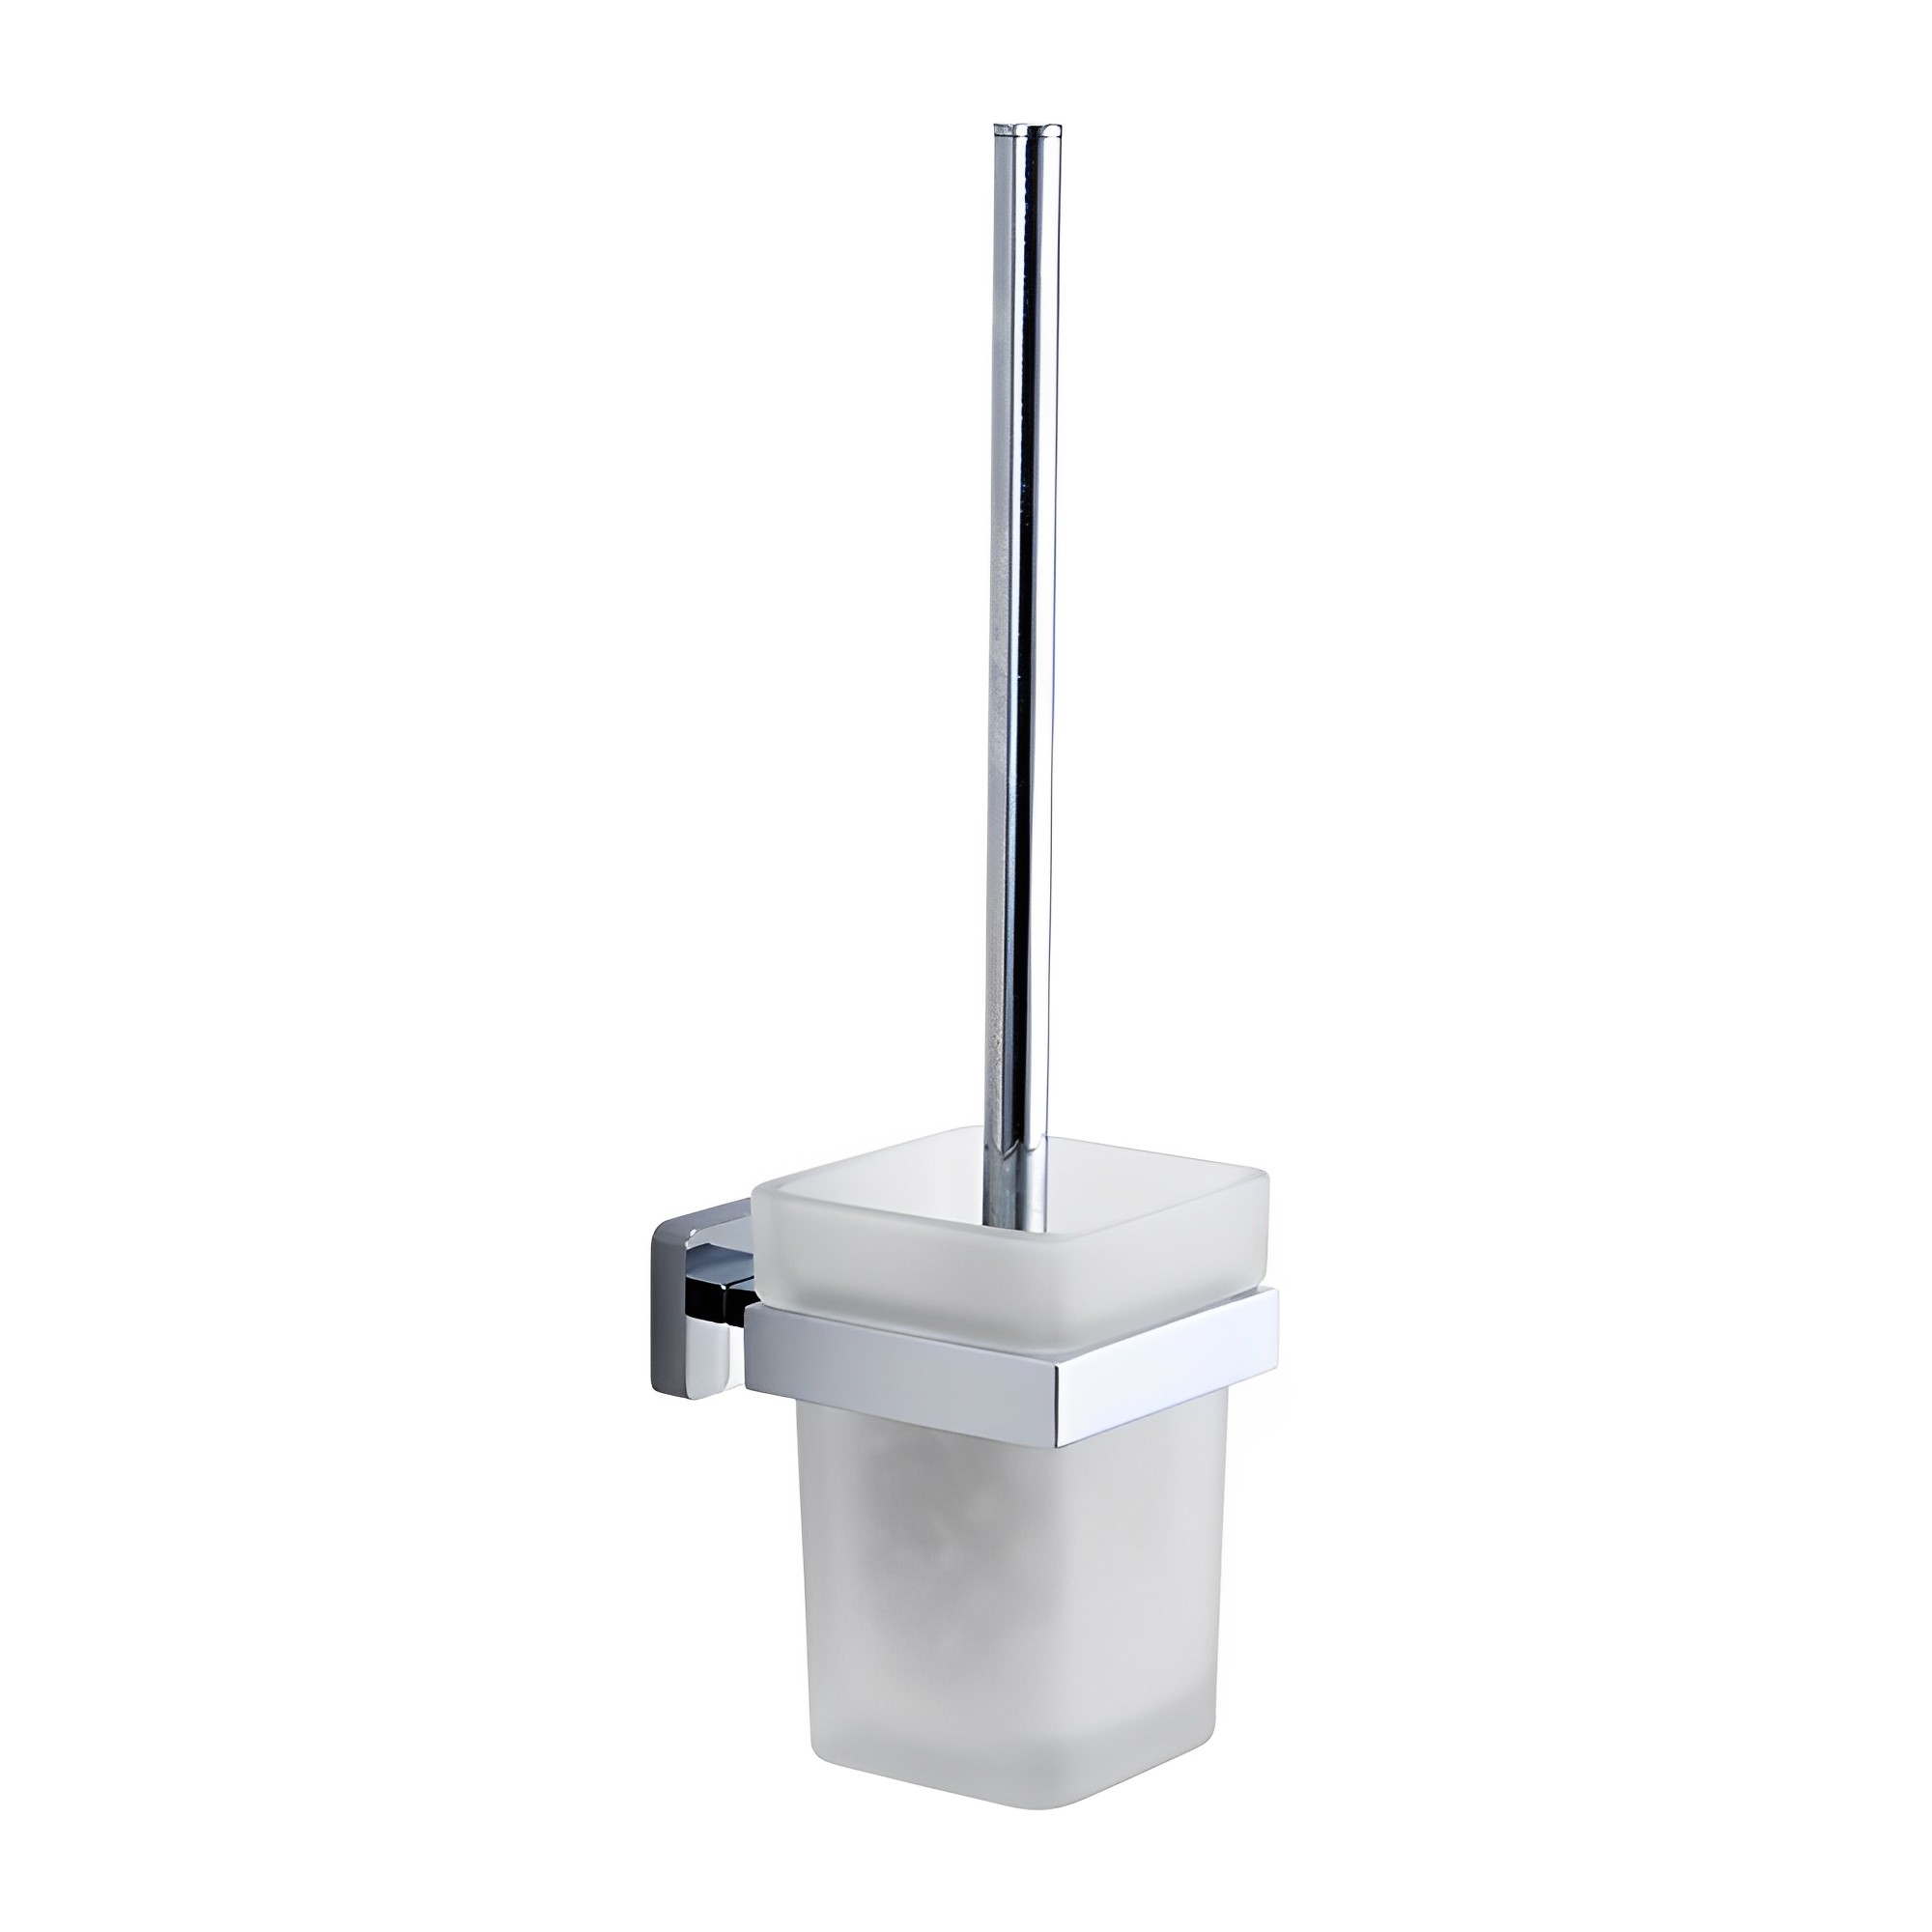 OJ-G1119L 화장실 브러시 홀더 크롬 도금 벽 유리 용기 아연 합금 욕실 액세서리와 함께 장착